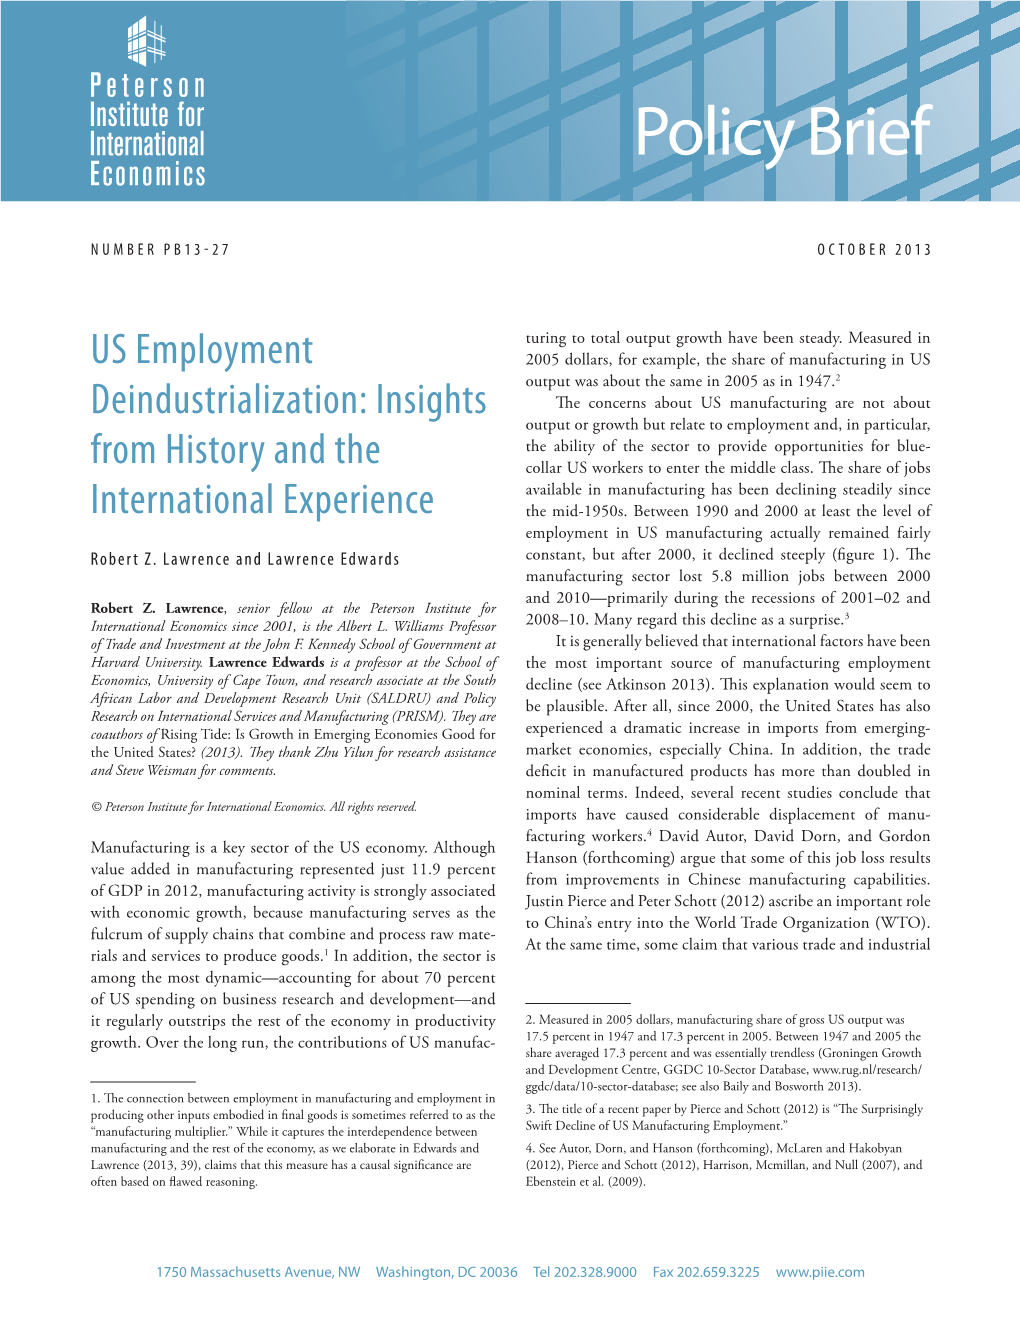 Policy Brief 13-27: US Employment Deindustrialization